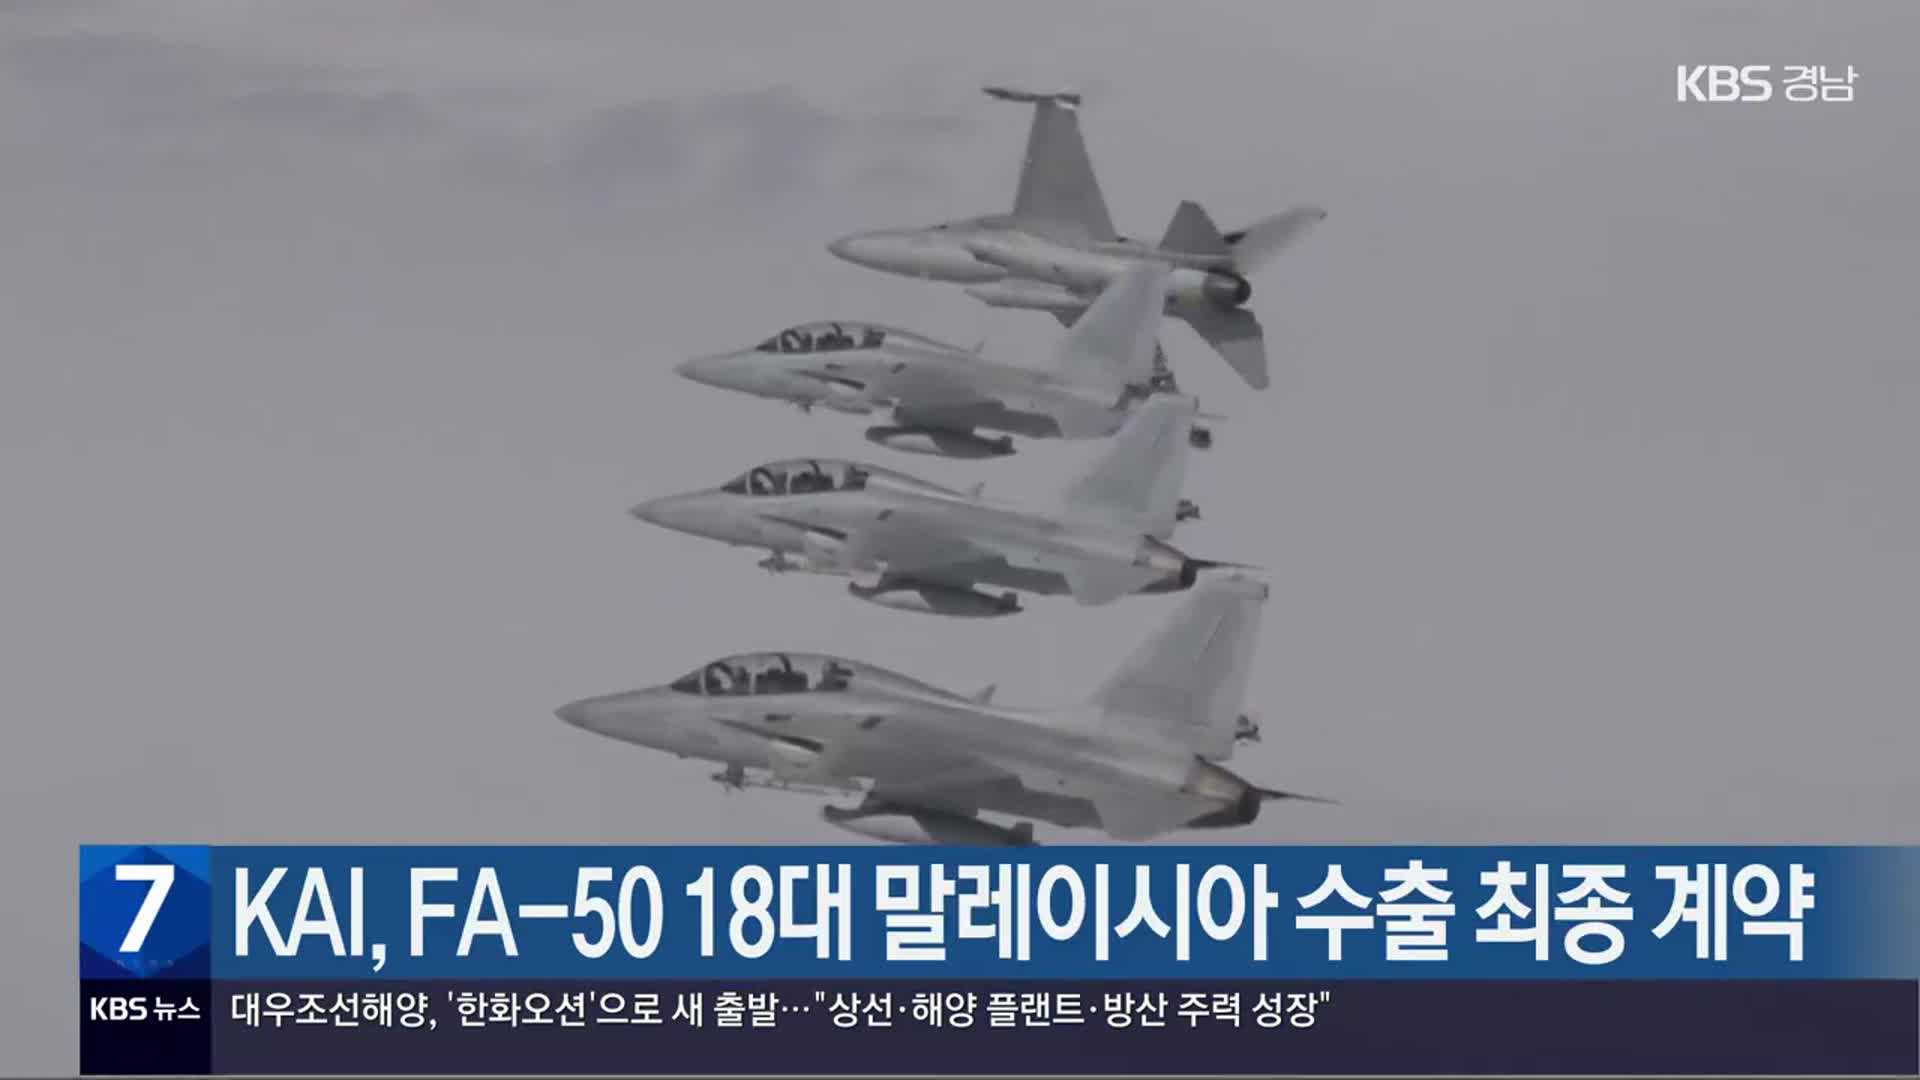 KAI, FA-50 18대 말레이시아 수출 최종 계약